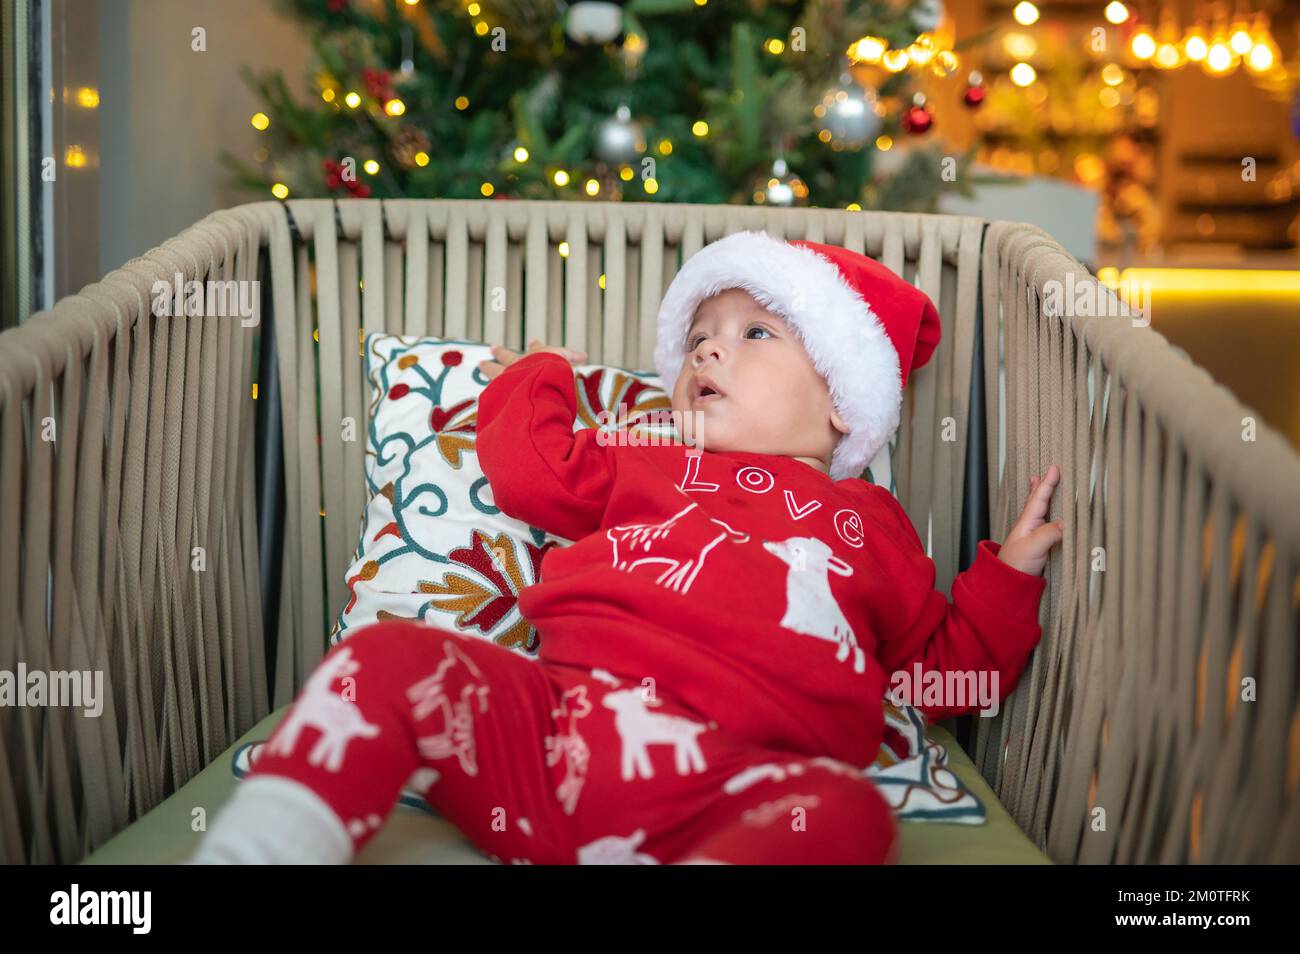 Joli bébé garçon portant un chapeau de père Noël et une tenue festive à côté d'un sapin de Noël avec une décoration festive et des lumières de ferry pour le nouvel an et la Christma Banque D'Images